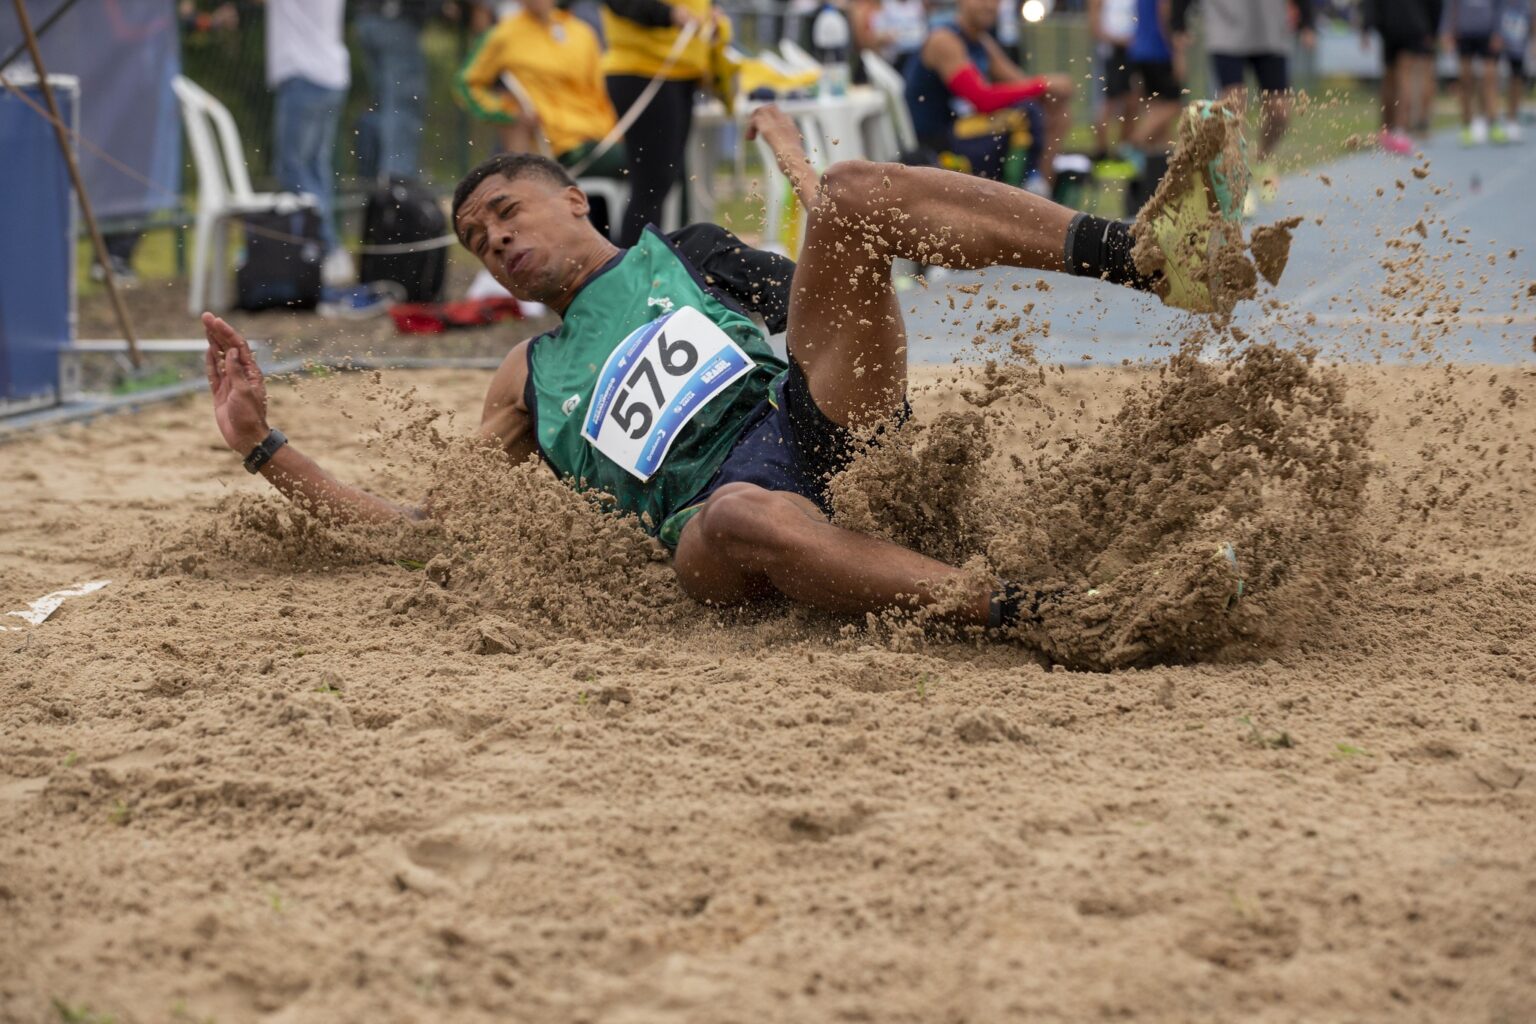 Um homem caindo na areia durante prova do salto em distância. A competição é o Meeting Paralímpico realizado pelo CPB.